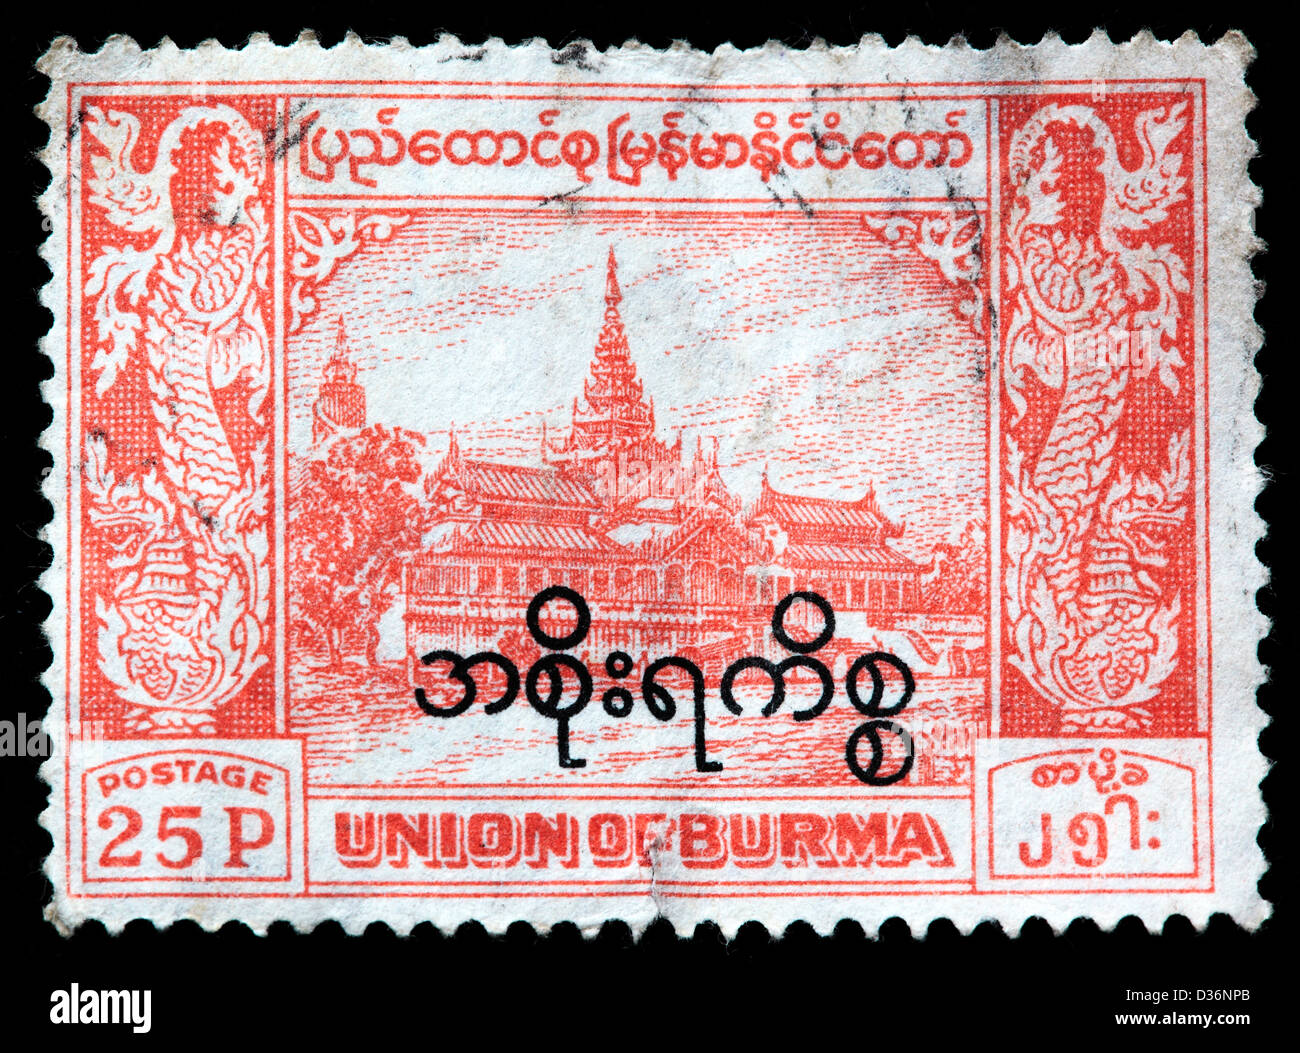 Centenary of Mandalay, postage stamp, Burma, 1959 Stock Photo